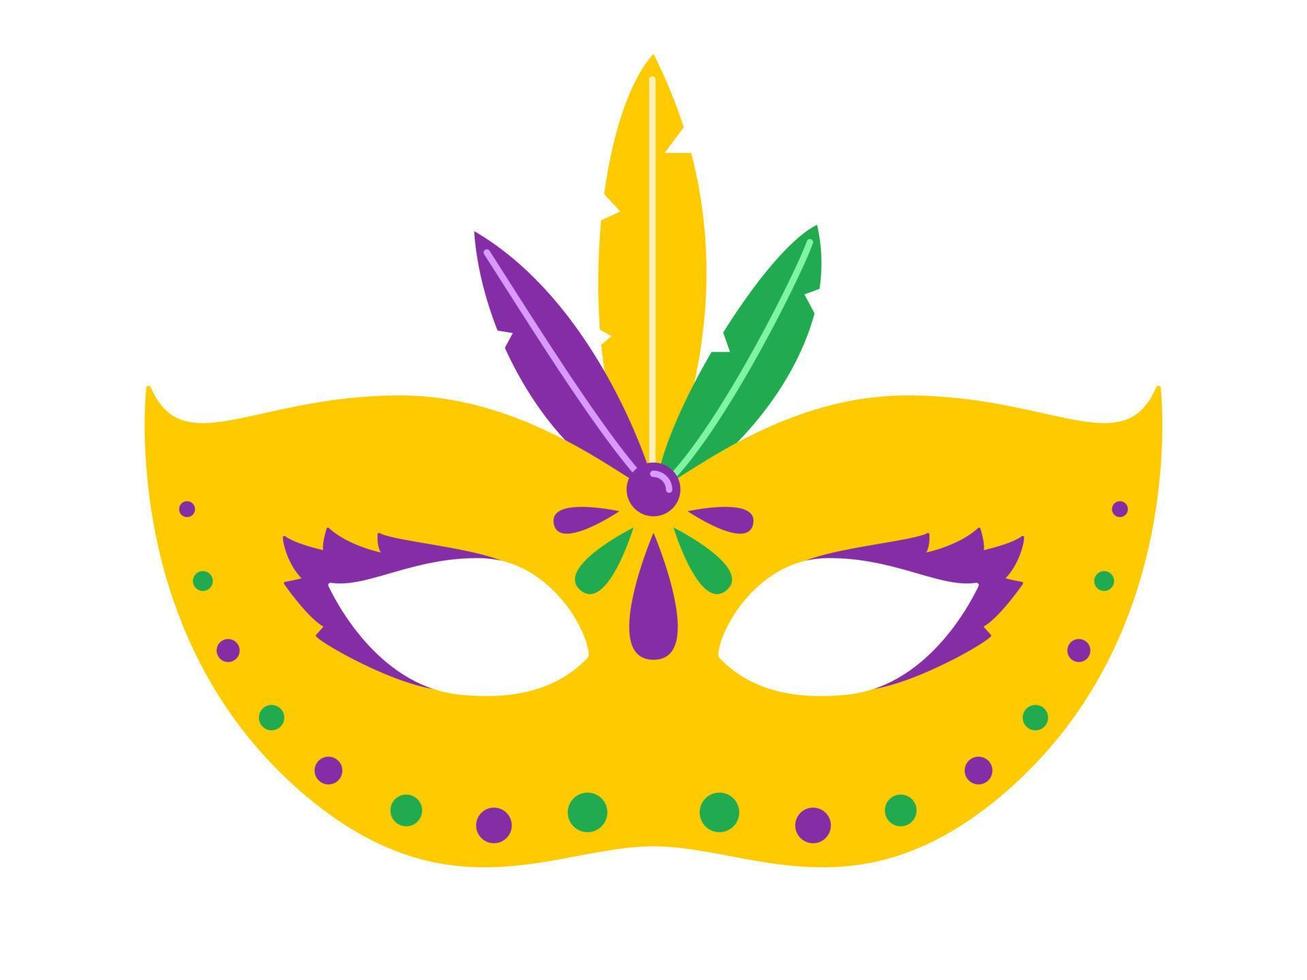 vetor máscara de carnaval amarela. máscara de carnaval com penas. design para terça-feira gorda. ilustração colorida do baile de máscaras. máscara de carnaval para feriado tradicional ou festival.